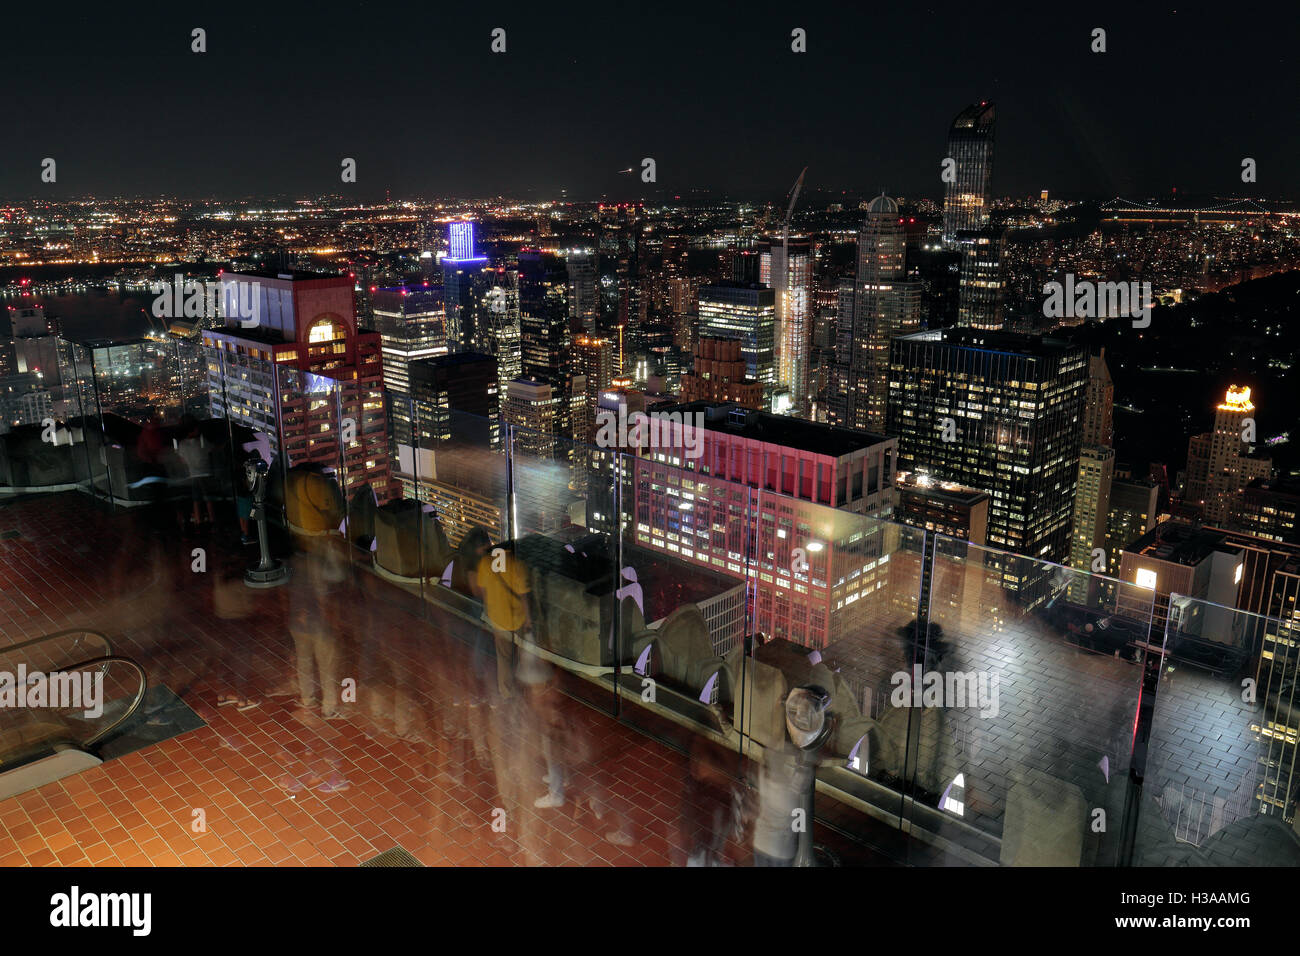 Verlängerte Belichtung zeigt Bestandteil einer Aussichtsplattform auf dem "Top of the World" Aussichtsplattform, Manhattan, New York. Stockfoto